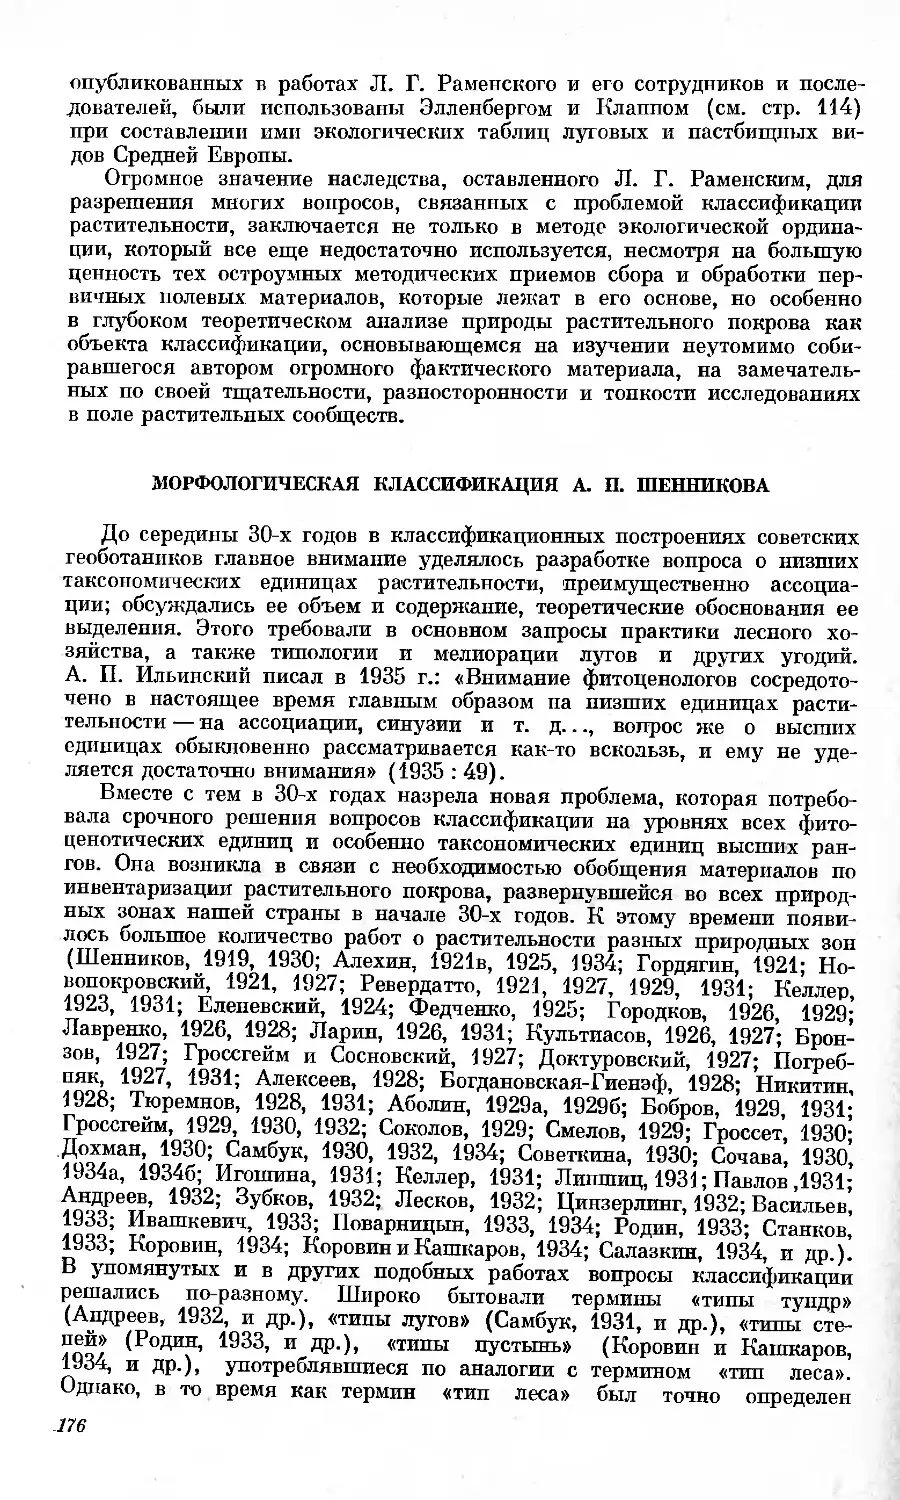 Морфологическая классификация А.П. Шенникова